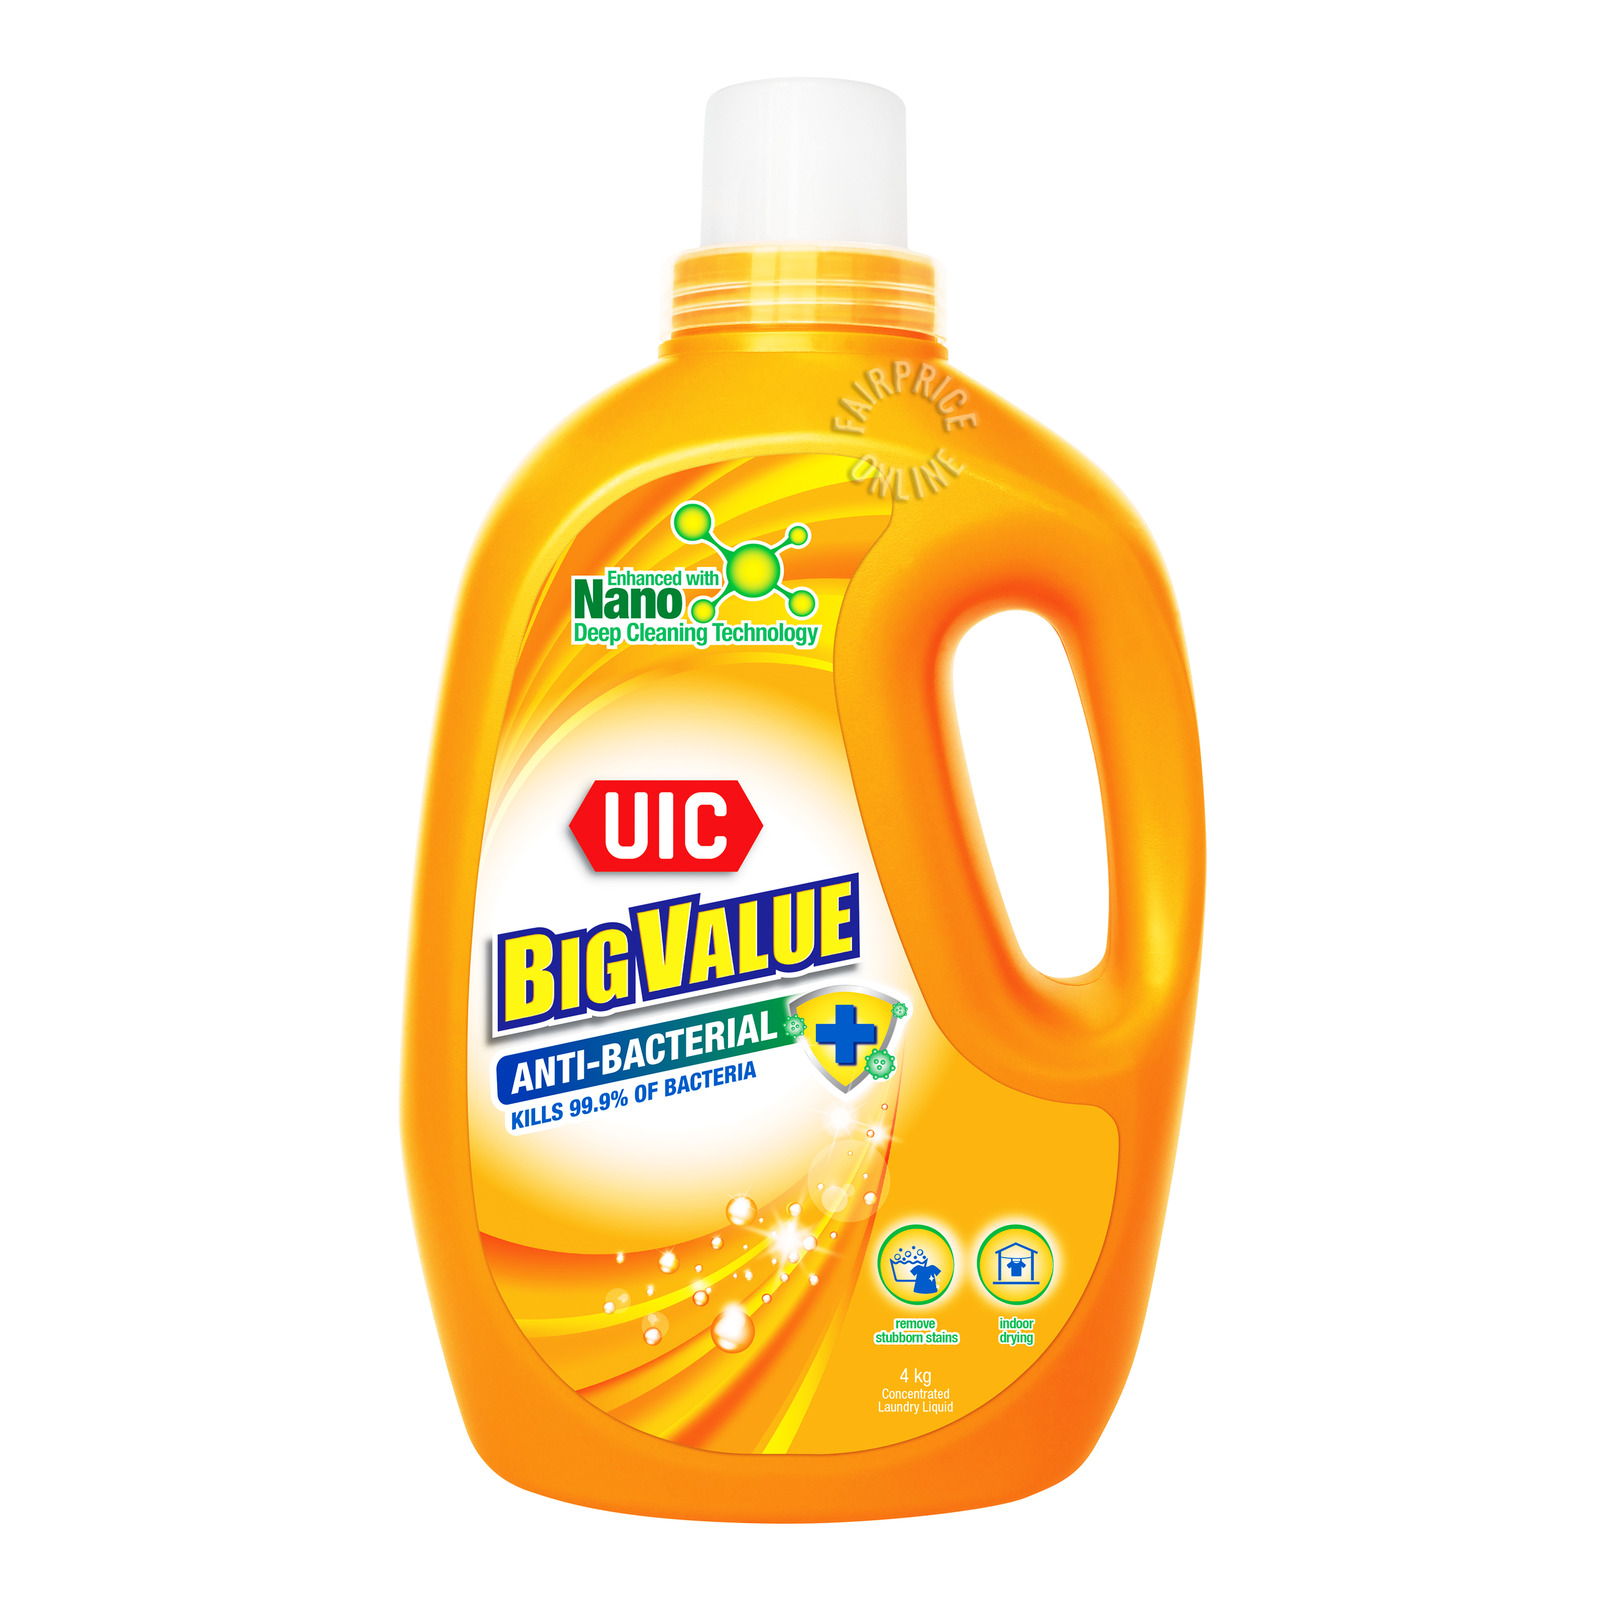 UIC Big Value Liquid Detergent - Anti-Bacterial